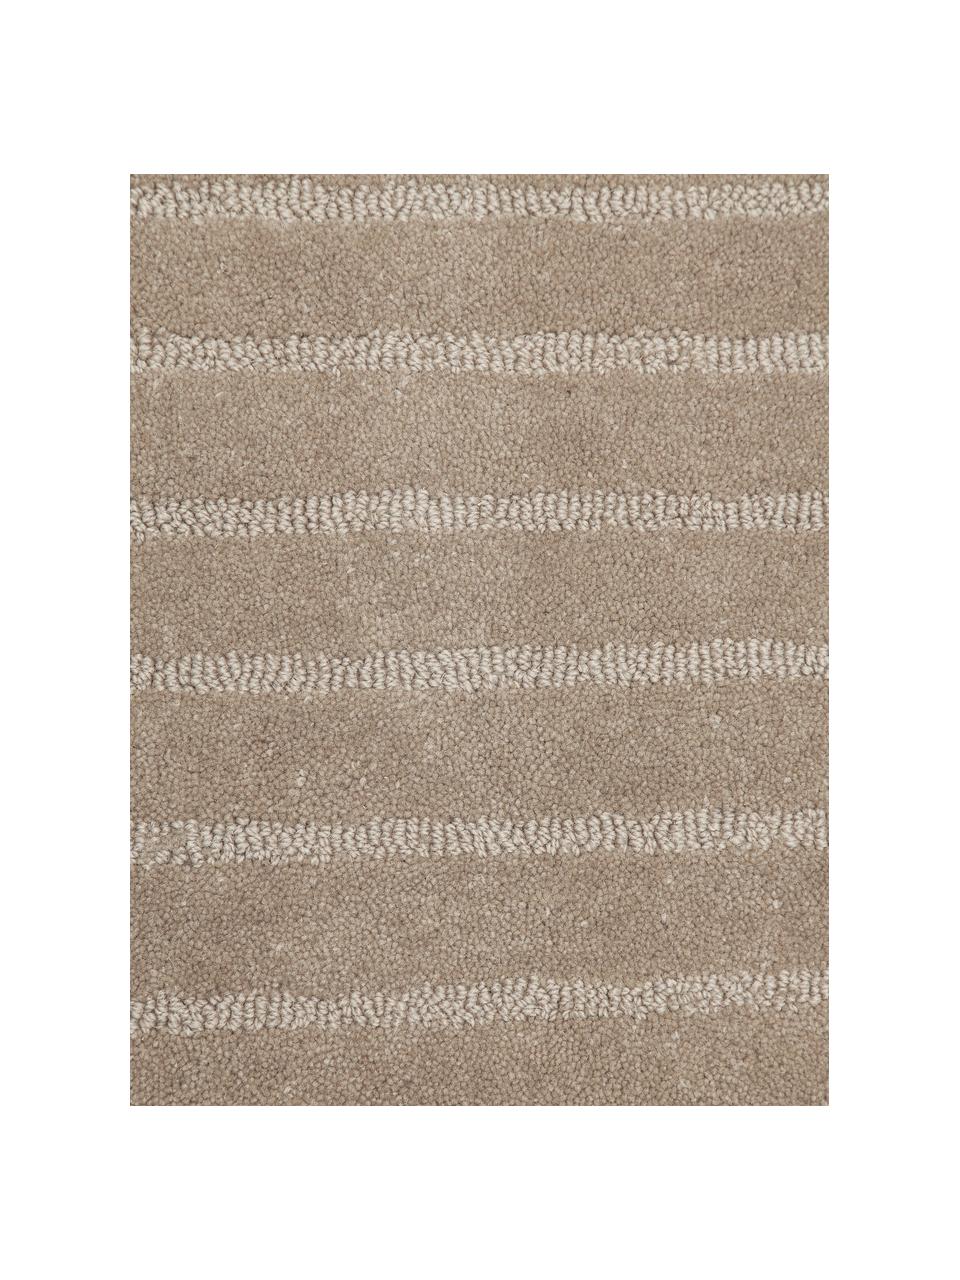 Ronde handgetuft wollen vloerkleed Mason in taupe, Bovenzijde: 100% wol, Onderzijde: 100% katoen, Beige, Ø 200 cm (maat L)